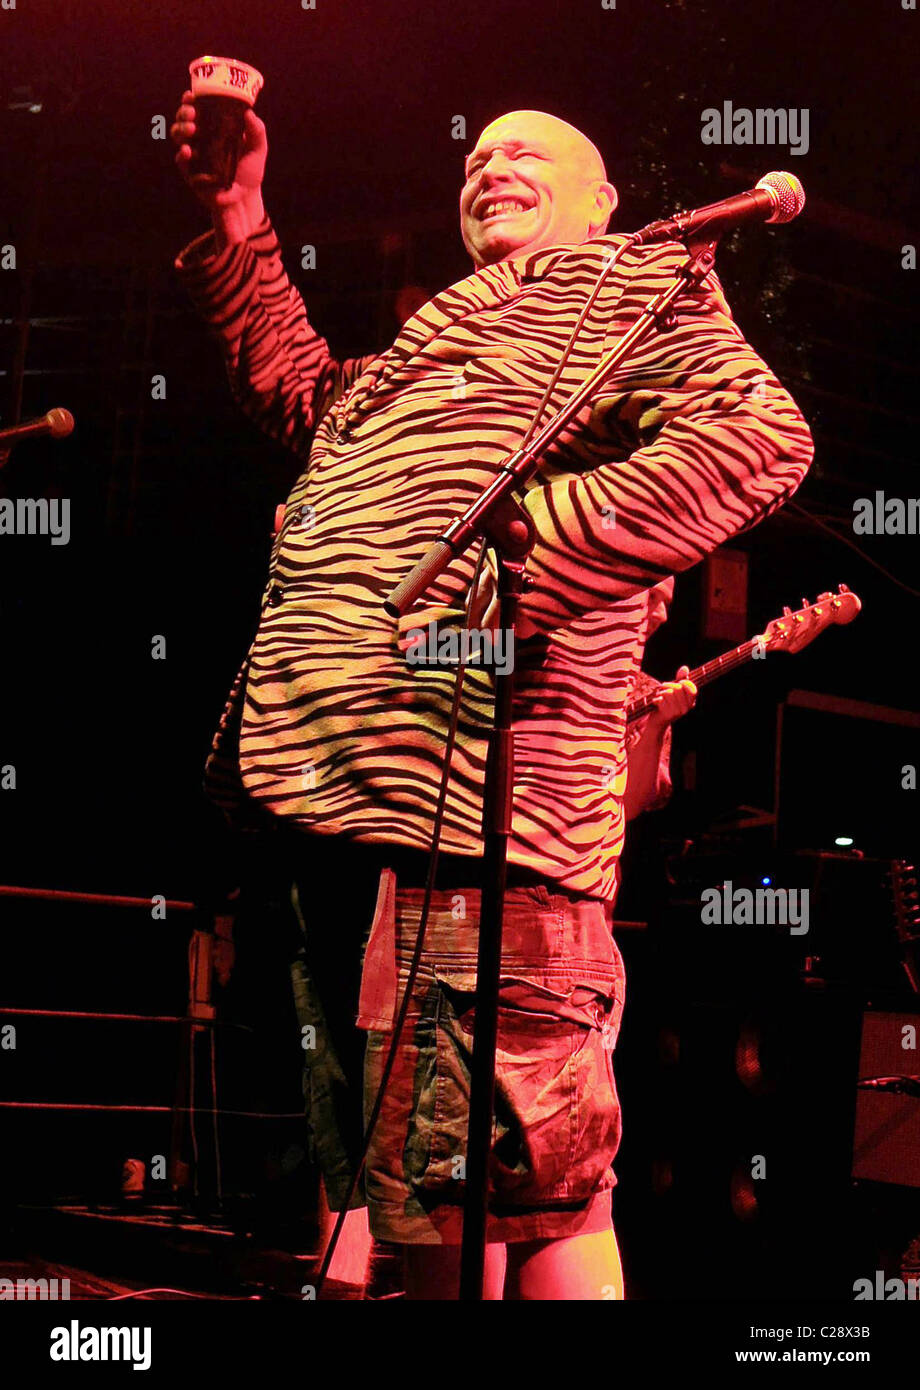 Buster del bloodvessel di 80s Ska Band cattive maniere suonare dal vivo presso l'Accademia. Dublino, Irlanda - 13.12.09 Foto Stock